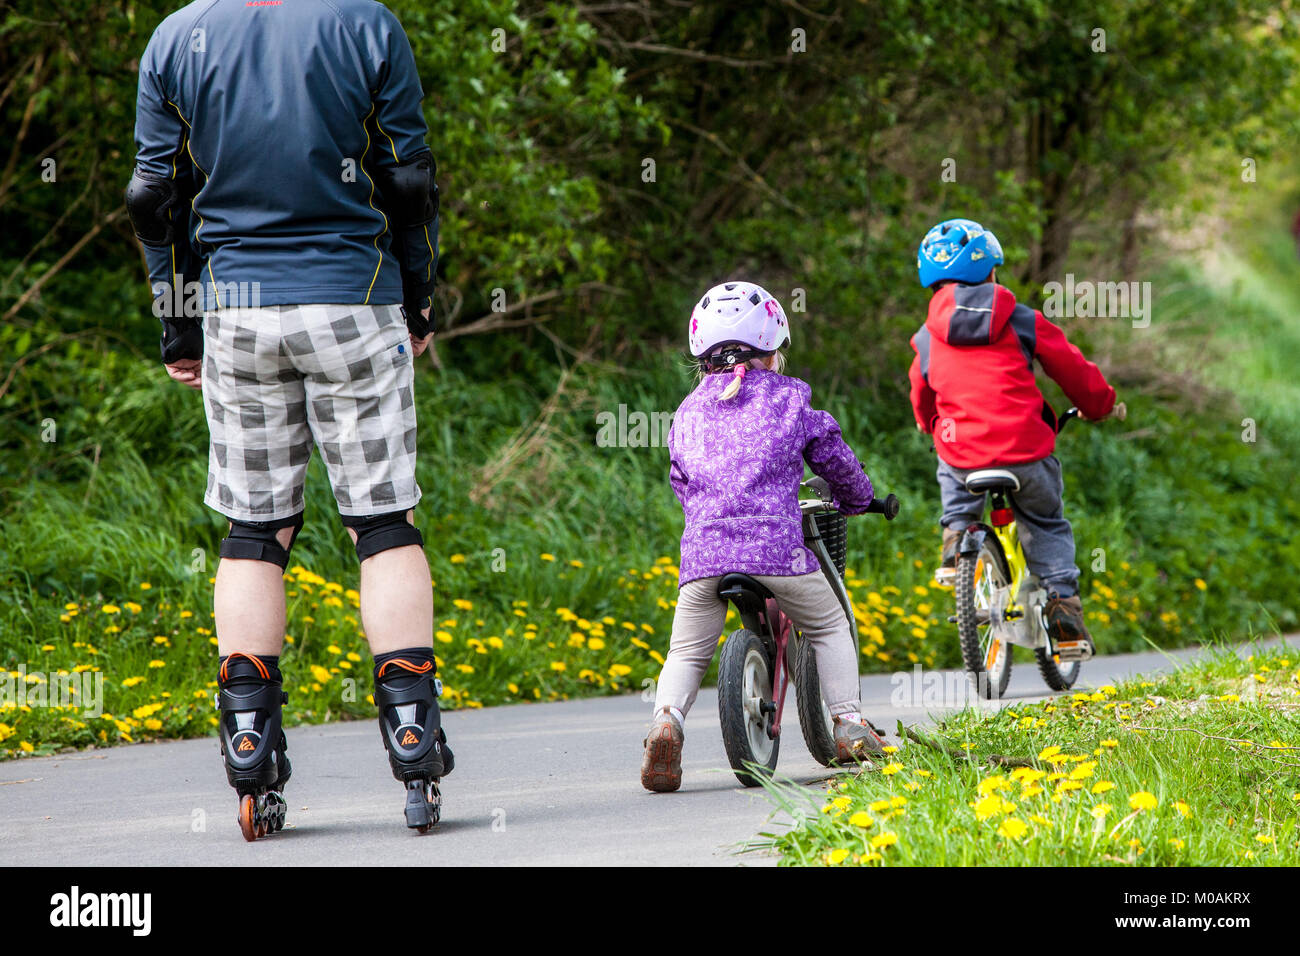 Kinder unter elterlicher Aufsicht zwei Kleinkinder fahren mit dem Fahrrad, gefolgt von ihrem Vater auf Rollschuhen Stockfoto